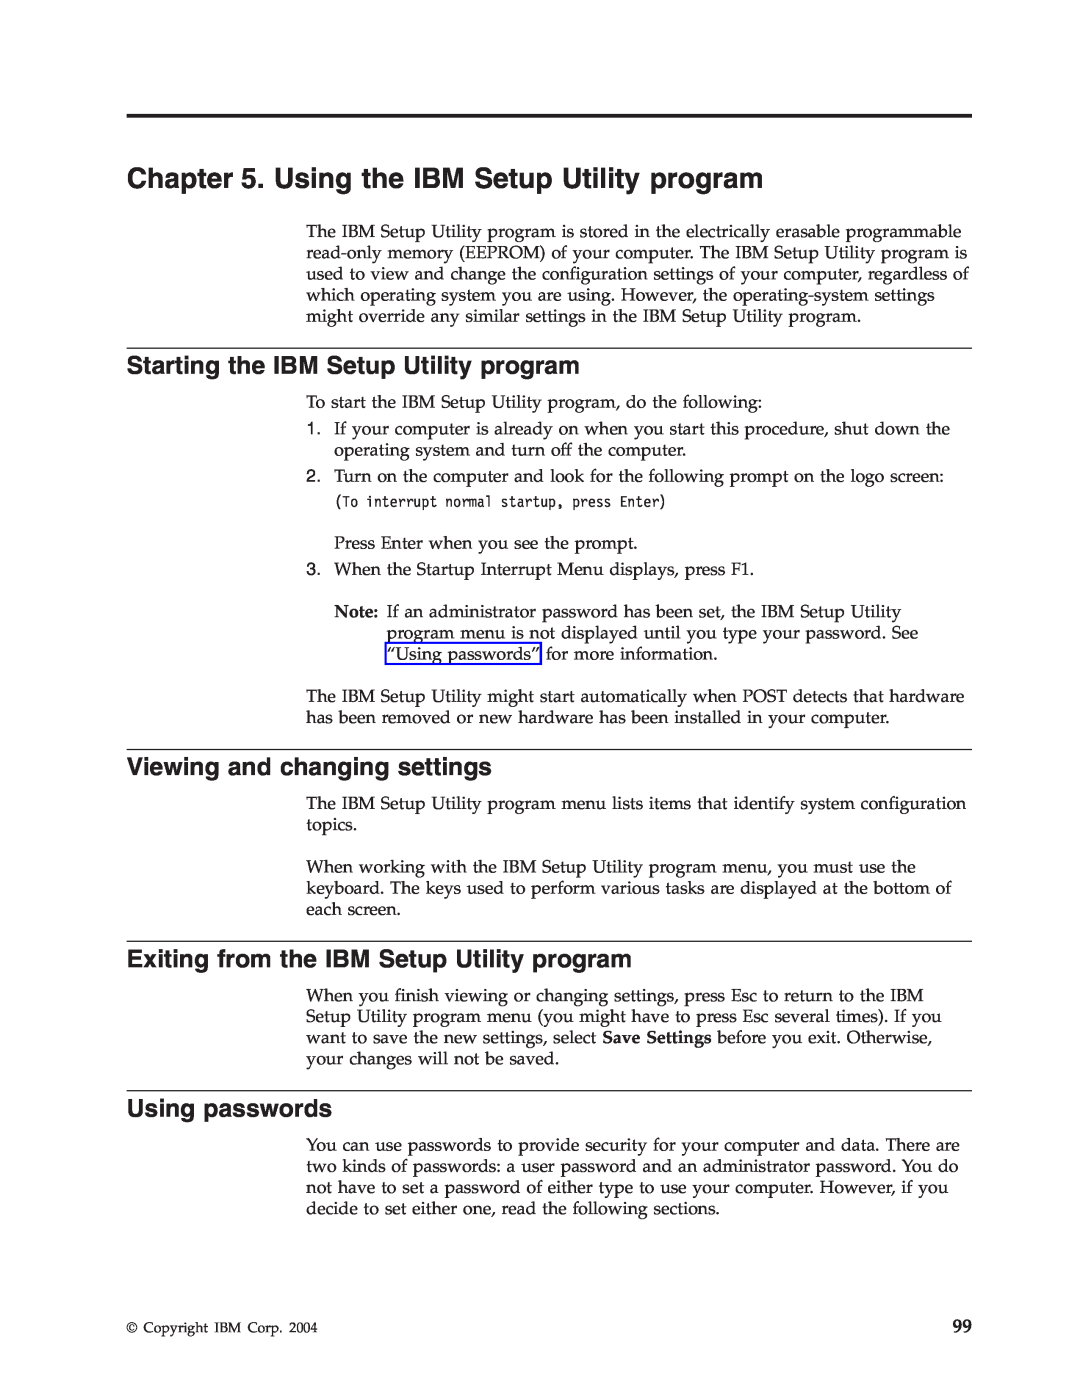 IBM 8186, 8128 Using the IBM Setup Utility program, Starting the IBM Setup Utility program, Viewing and changing settings 